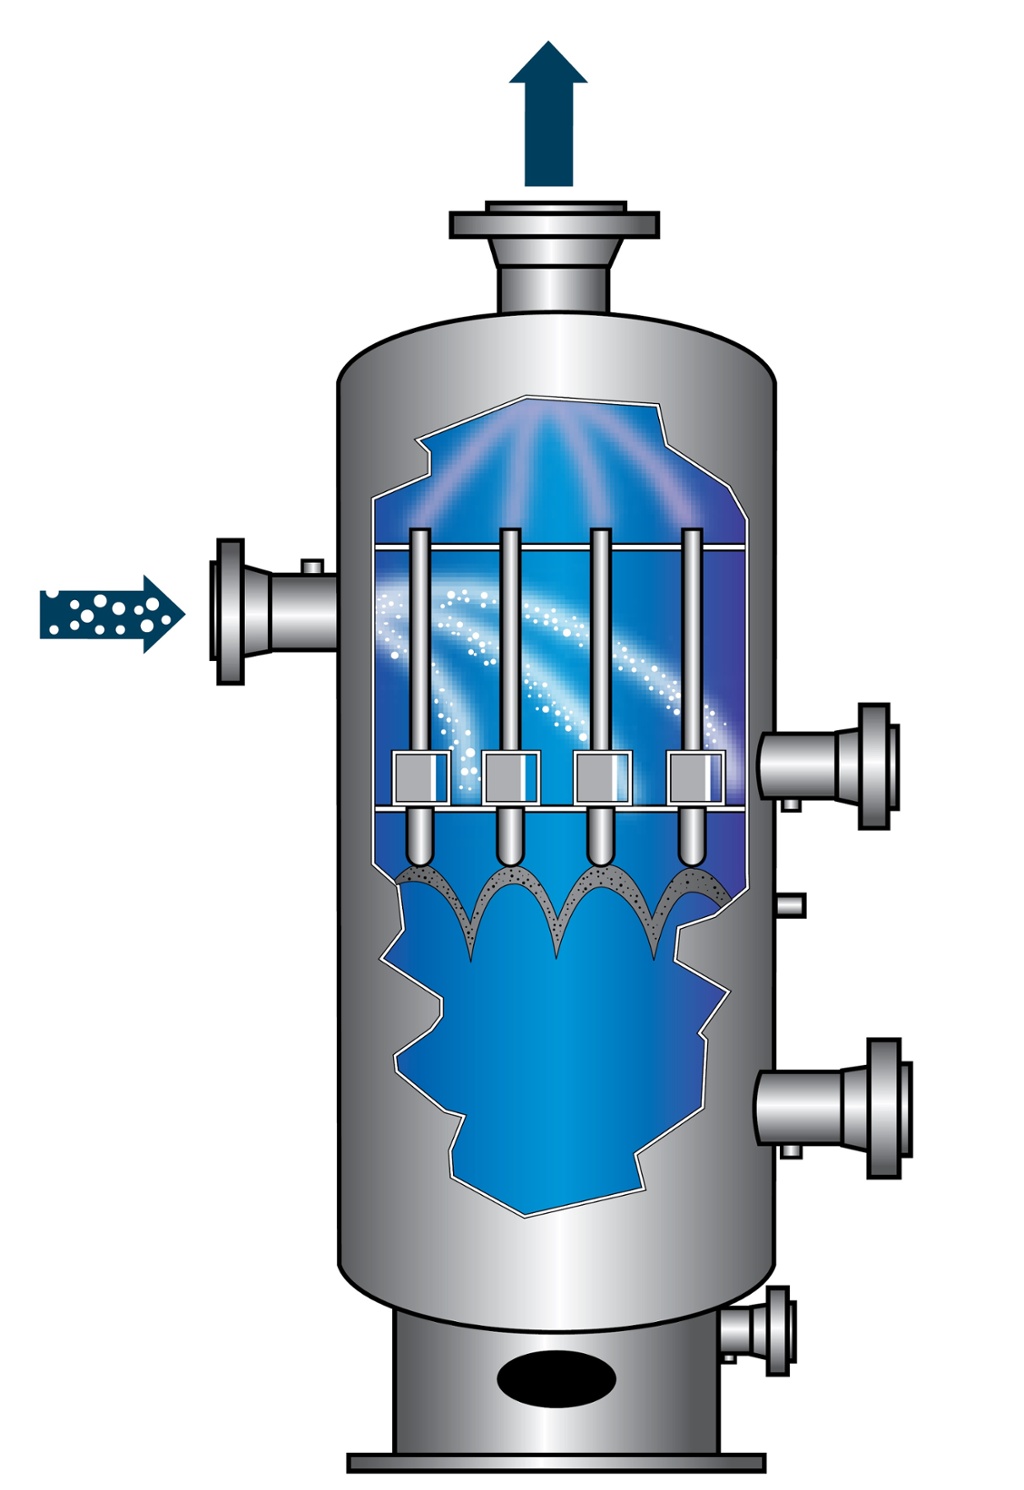 Очистка воздуха и газов. Скруббер охладитель со2. Газовый сепаратор (скруббер). Мокрый форсуночный скруббер. Скруббер для очистки воздуха от газов.